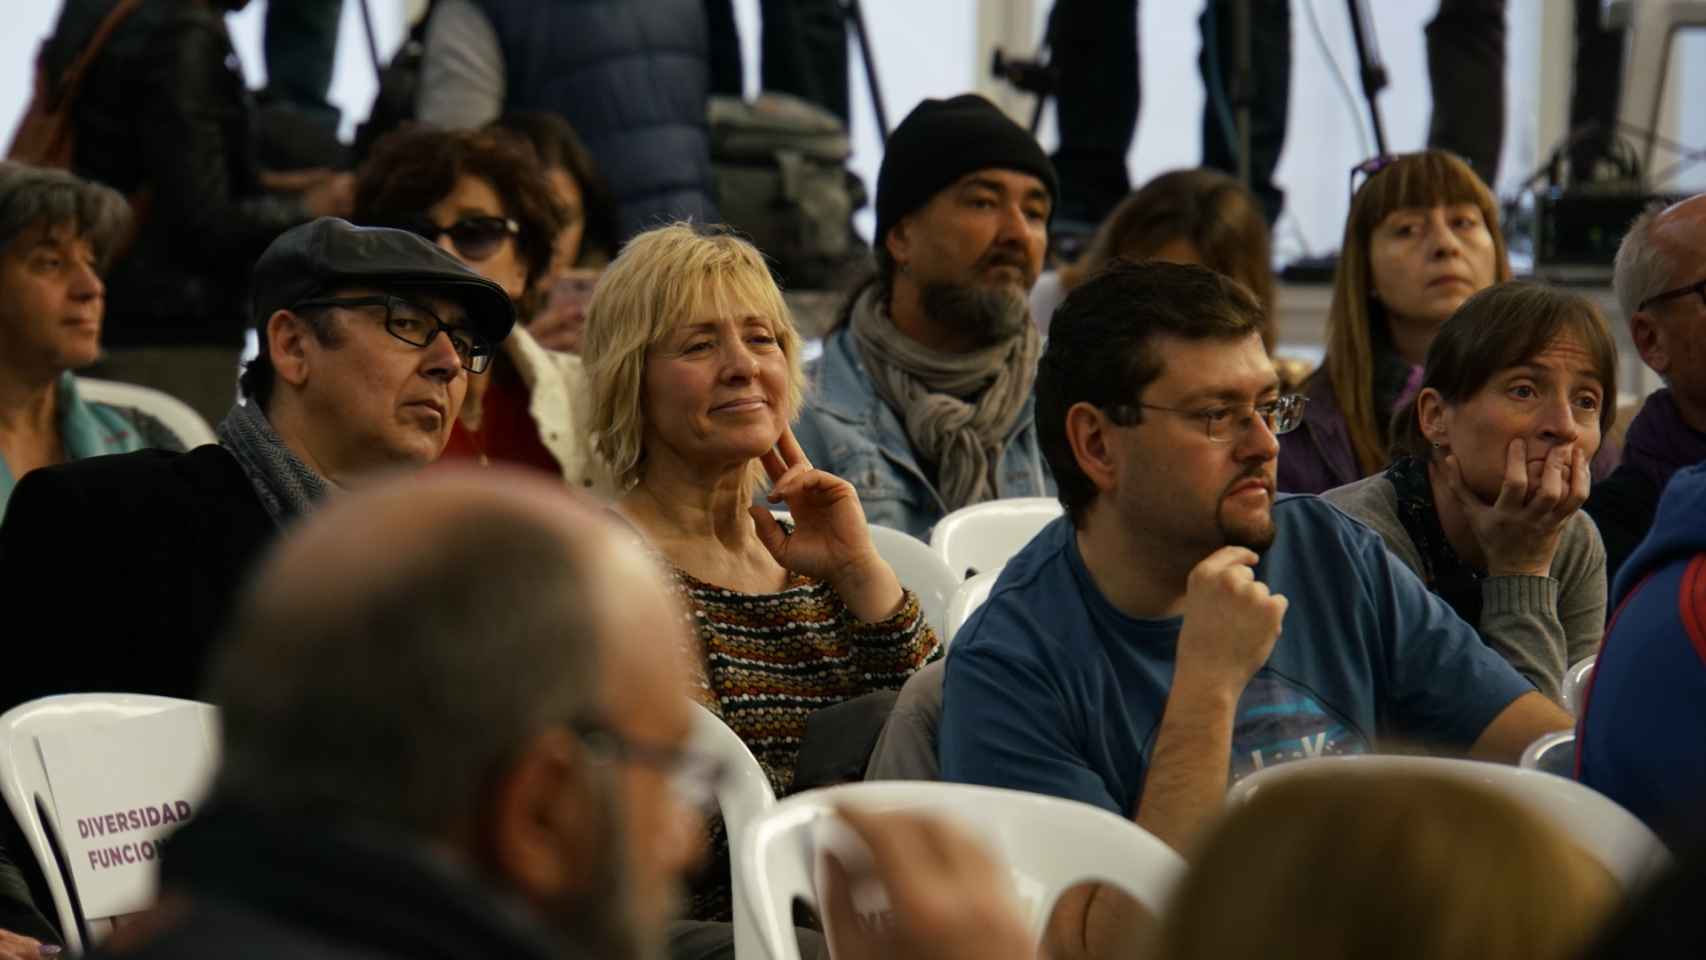 Pilar Baeza, la candidata de Podemos condenada por asesinato, escondida entre el público en un acto de precamapña en Valladolid.